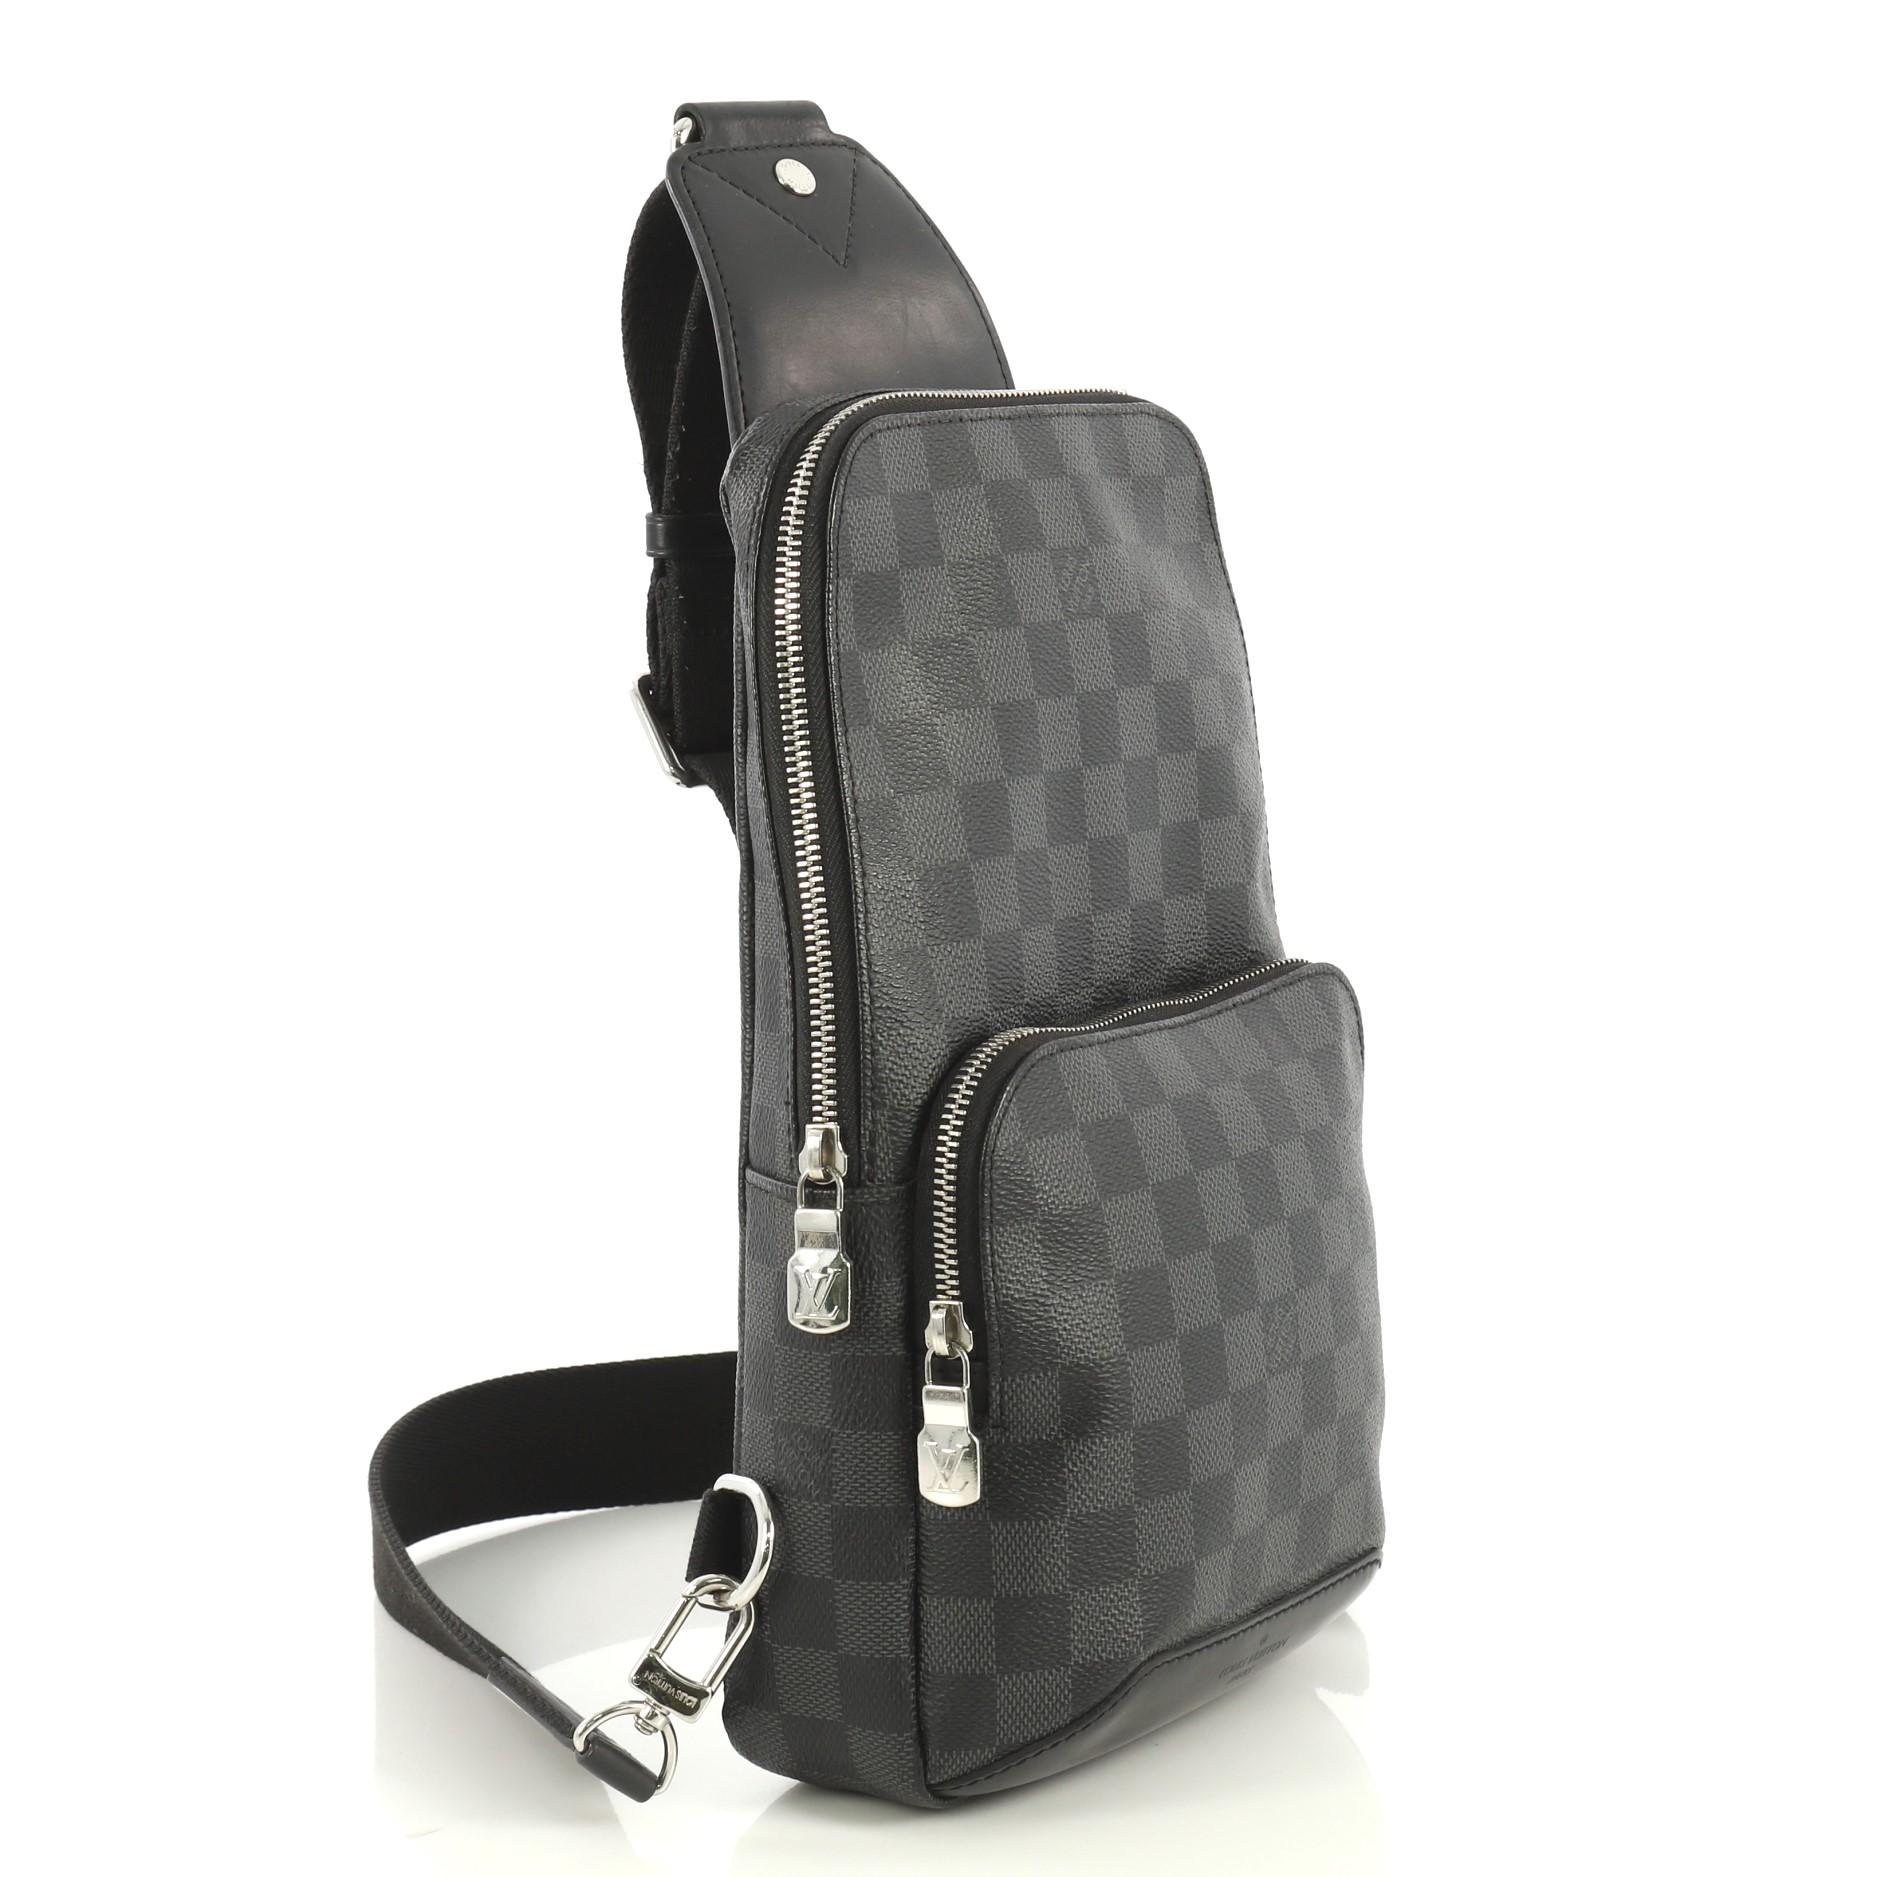 Lv sling bag new design With 2 - D & G Online Shop